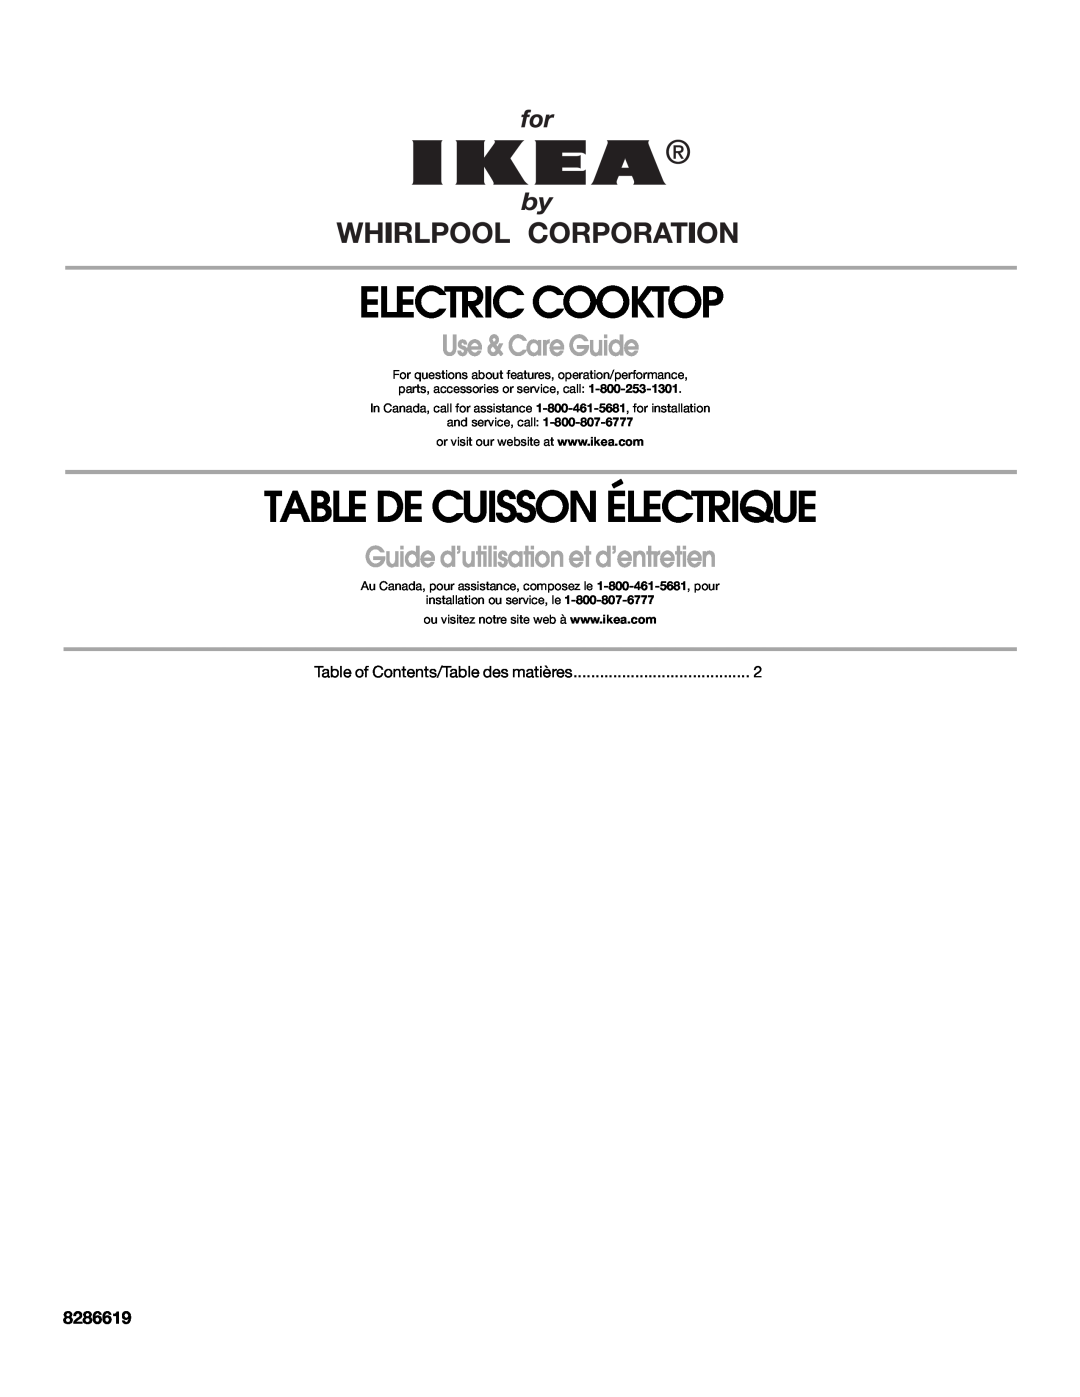 Whirlpool 8286619 manual Electric Cooktop, Table De Cuisson Électrique, Use & Care Guide 